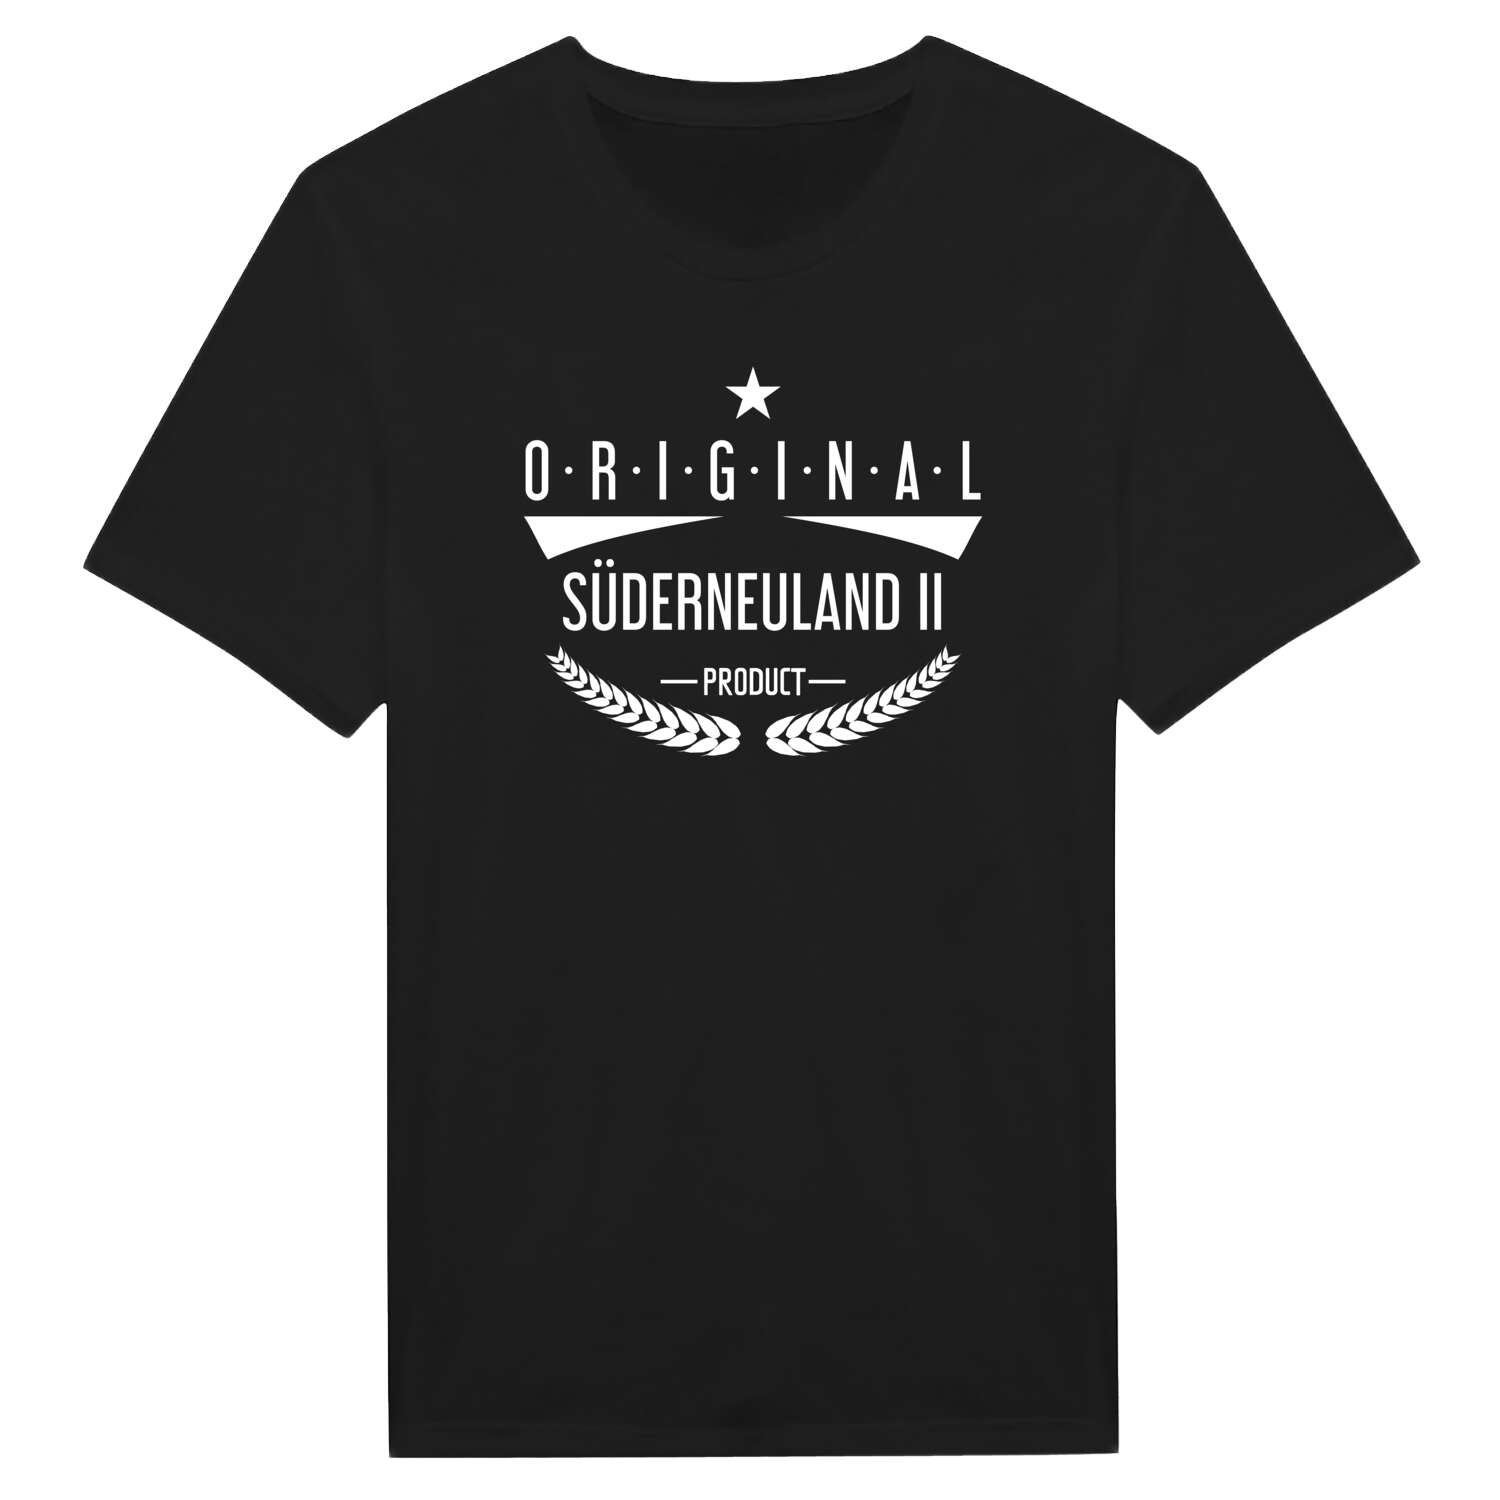 Süderneuland II T-Shirt »Original Product«